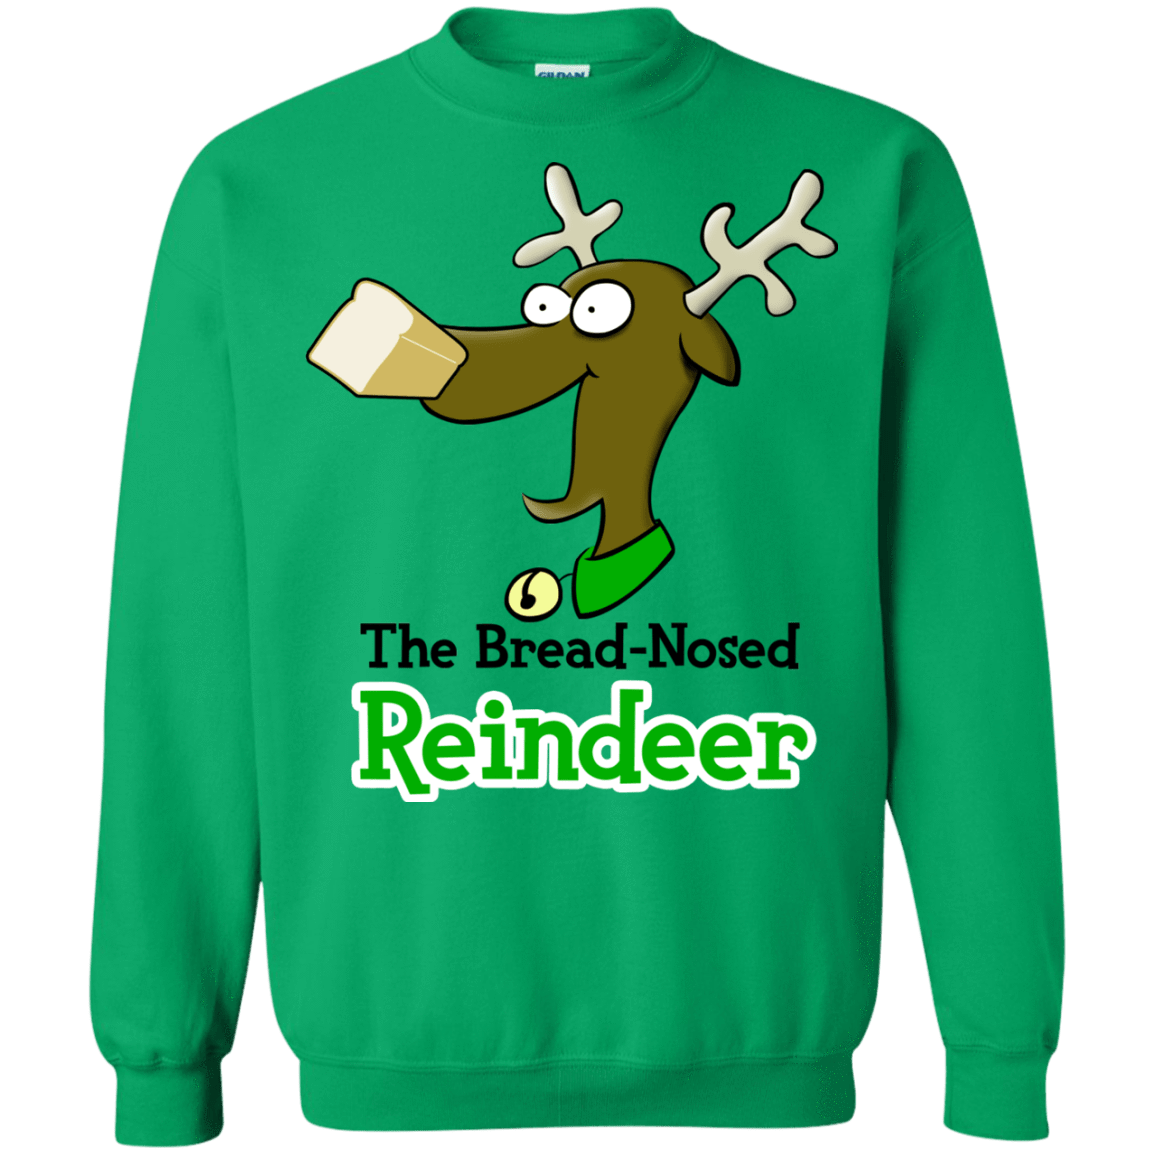 Sweatshirts Irish Green / Small Rudy Crewneck Sweatshirt